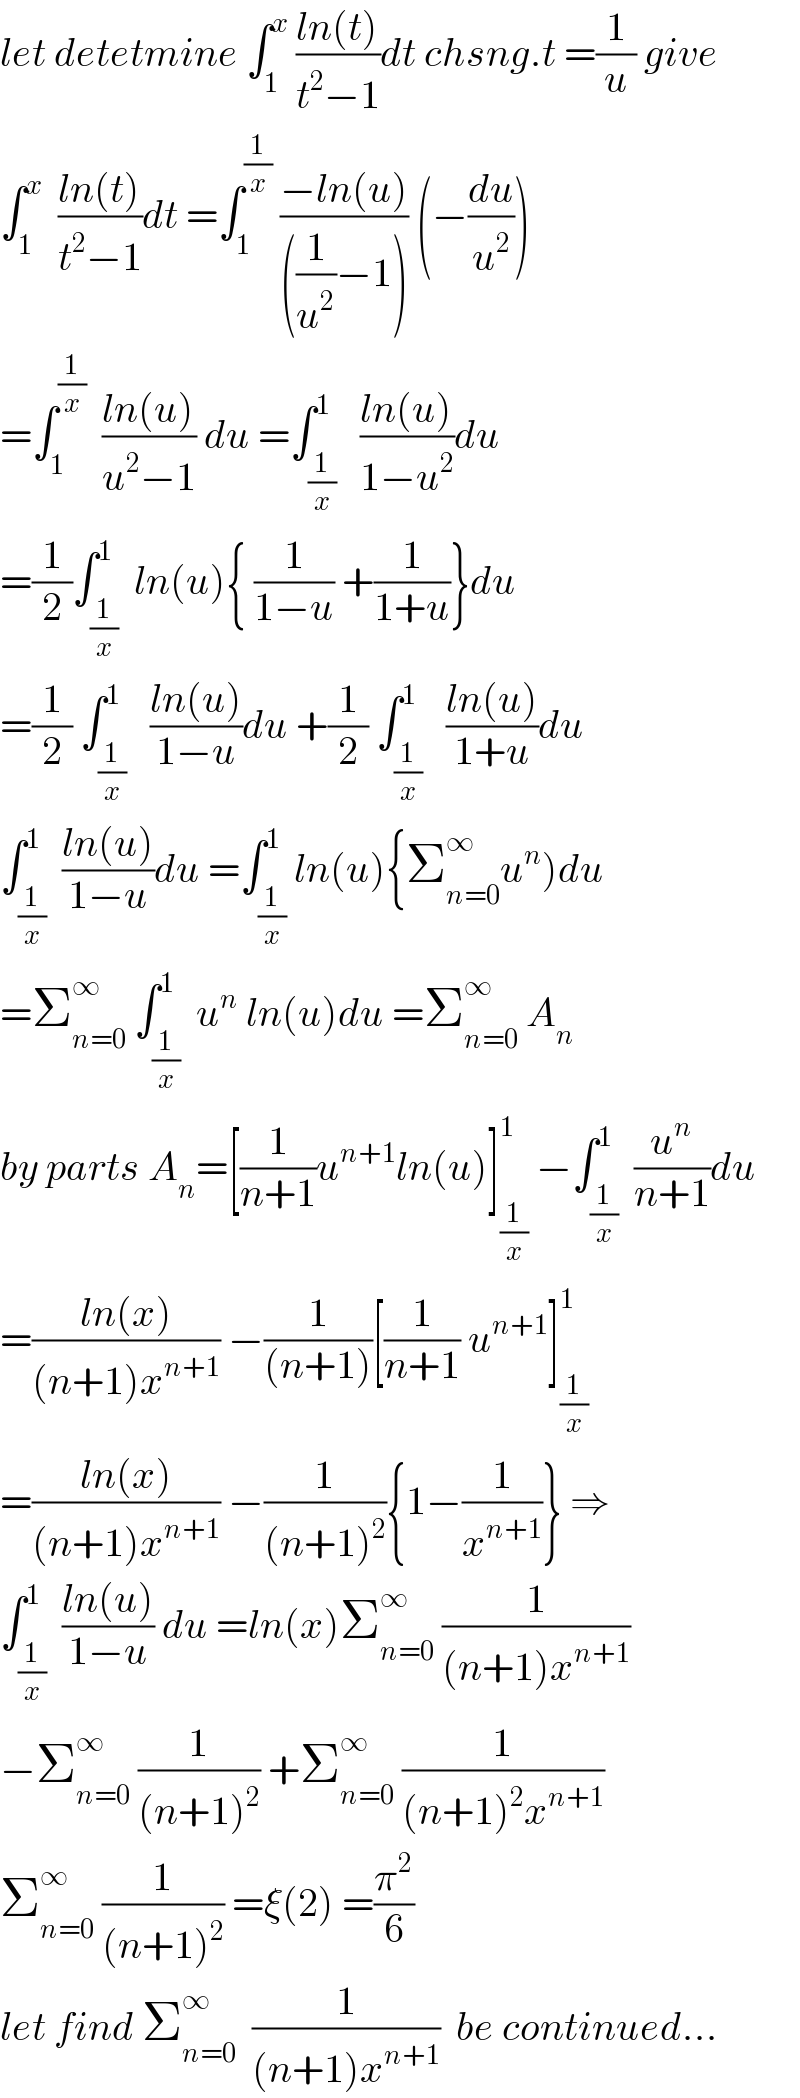 let detetmine ∫_1 ^x  ((ln(t))/(t^2 −1))dt chsng.t =(1/u) give  ∫_1 ^x   ((ln(t))/(t^2 −1))dt =∫_1 ^(1/x)  ((−ln(u))/(((1/u^2 )−1))) (−(du/u^2 ))  =∫_1 ^(1/x)   ((ln(u))/(u^2 −1)) du =∫_(1/x) ^1   ((ln(u))/(1−u^2 ))du  =(1/2)∫_(1/x) ^1  ln(u){ (1/(1−u)) +(1/(1+u))}du  =(1/2) ∫_(1/x) ^1   ((ln(u))/(1−u))du +(1/2) ∫_(1/x) ^1   ((ln(u))/(1+u))du  ∫_(1/x) ^1  ((ln(u))/(1−u))du =∫_(1/x) ^1 ln(u){Σ_(n=0) ^∞ u^n )du  =Σ_(n=0) ^∞  ∫_(1/x) ^1  u^n  ln(u)du =Σ_(n=0) ^∞  A_n   by parts A_n =[(1/(n+1))u^(n+1) ln(u)]_(1/x) ^1  −∫_(1/x) ^1  (u^n /(n+1))du  =((ln(x))/((n+1)x^(n+1) )) −(1/((n+1)))[(1/(n+1)) u^(n+1) ]_(1/x) ^1   =((ln(x))/((n+1)x^(n+1) )) −(1/((n+1)^2 )){1−(1/x^(n+1) )} ⇒  ∫_(1/x) ^1  ((ln(u))/(1−u)) du =ln(x)Σ_(n=0) ^∞  (1/((n+1)x^(n+1) ))  −Σ_(n=0) ^∞  (1/((n+1)^2 )) +Σ_(n=0) ^∞  (1/((n+1)^2 x^(n+1) ))  Σ_(n=0) ^∞  (1/((n+1)^2 )) =ξ(2) =(π^2 /6)  let find Σ_(n=0) ^∞   (1/((n+1)x^(n+1) ))  be continued...  